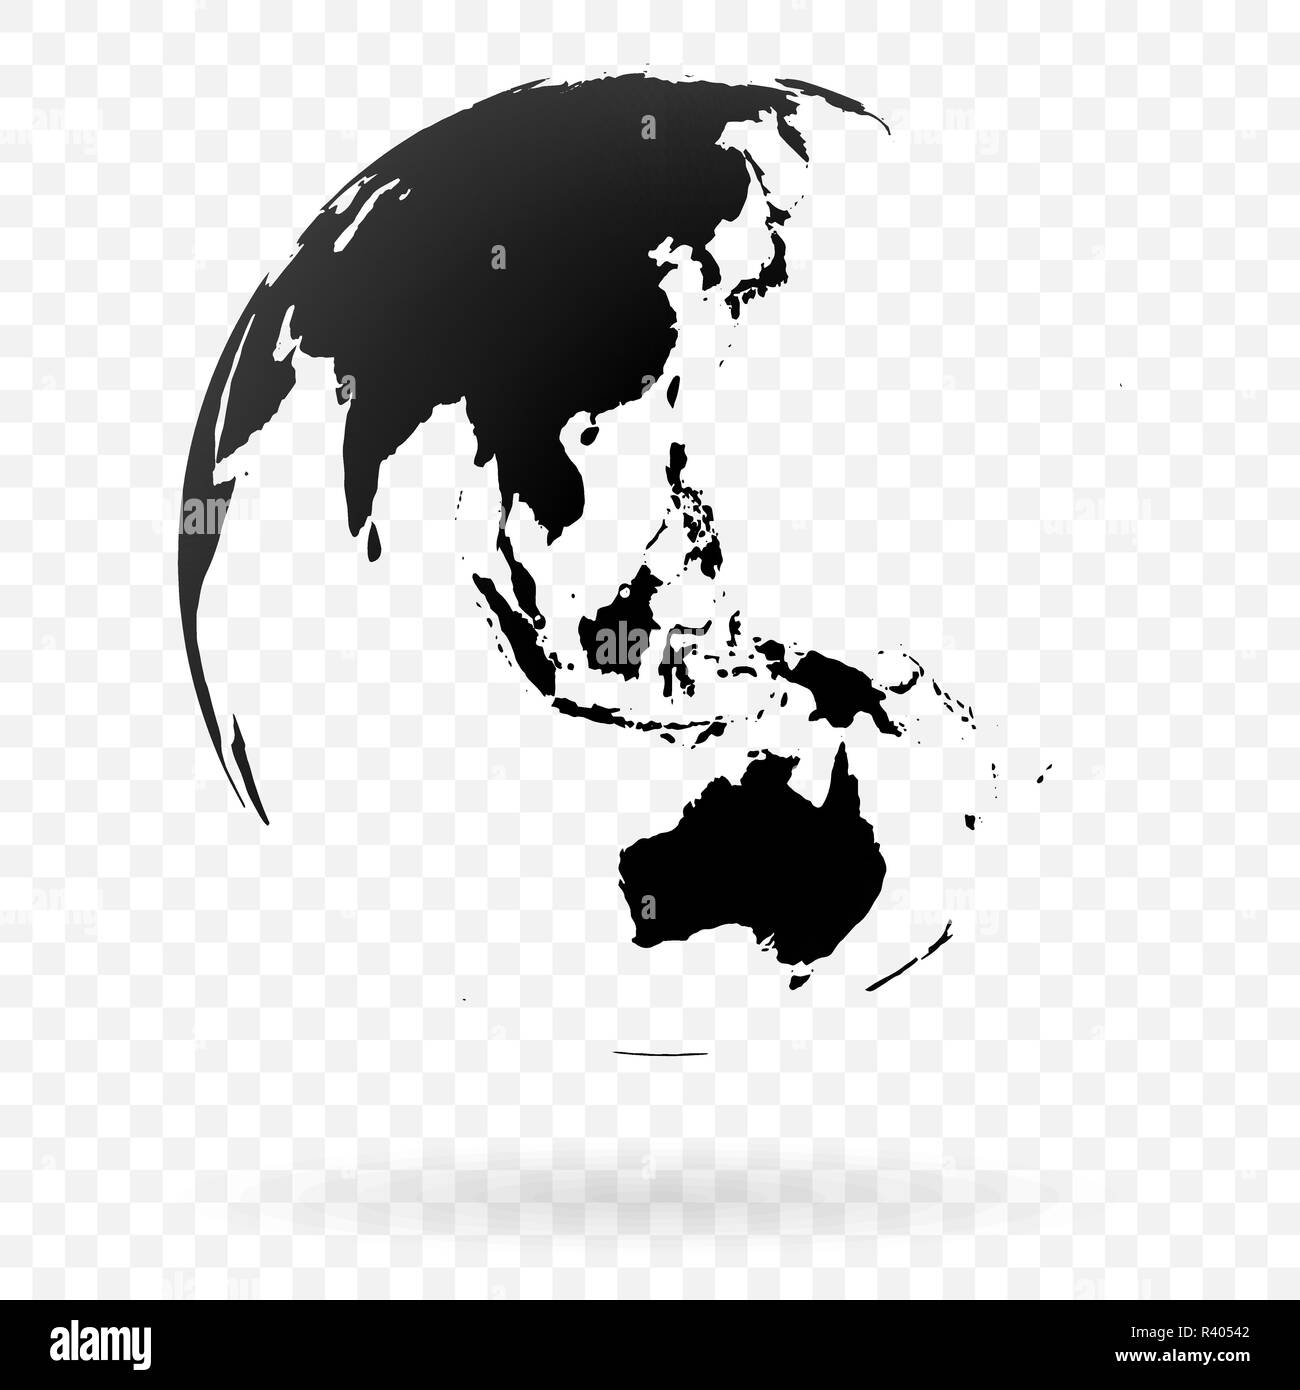 Altamente dettagliate globo terrestre simbolo, Australia, oceani Indiano e Pacifico. Nero su sfondo bianco. Illustrazione Vettoriale